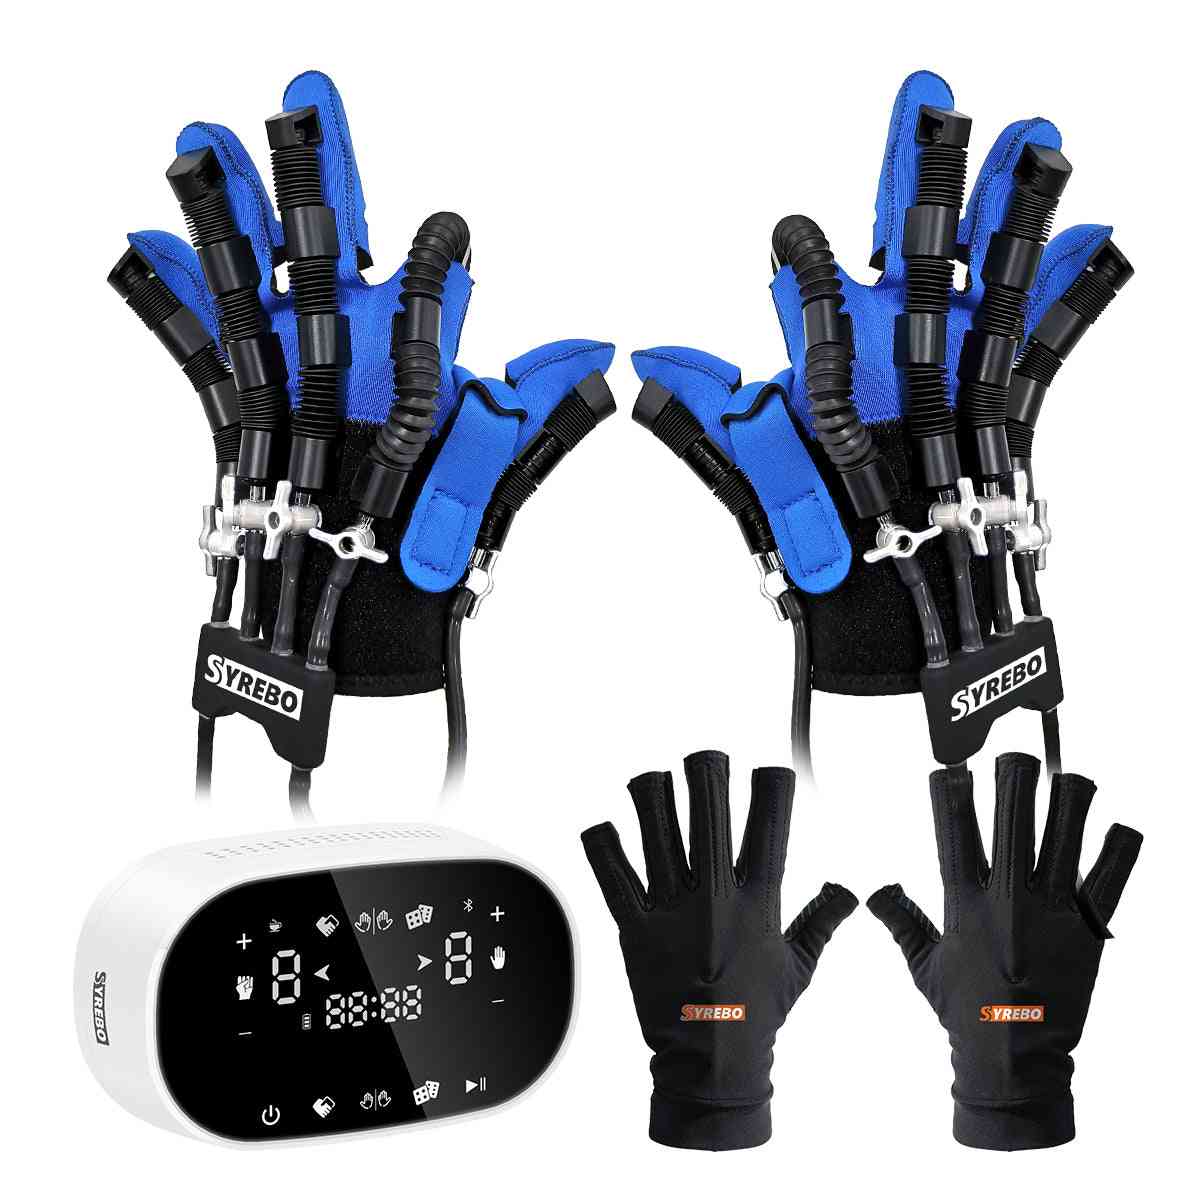 SYREBO C11 Hand Strengthening Exercises Robot Gloves